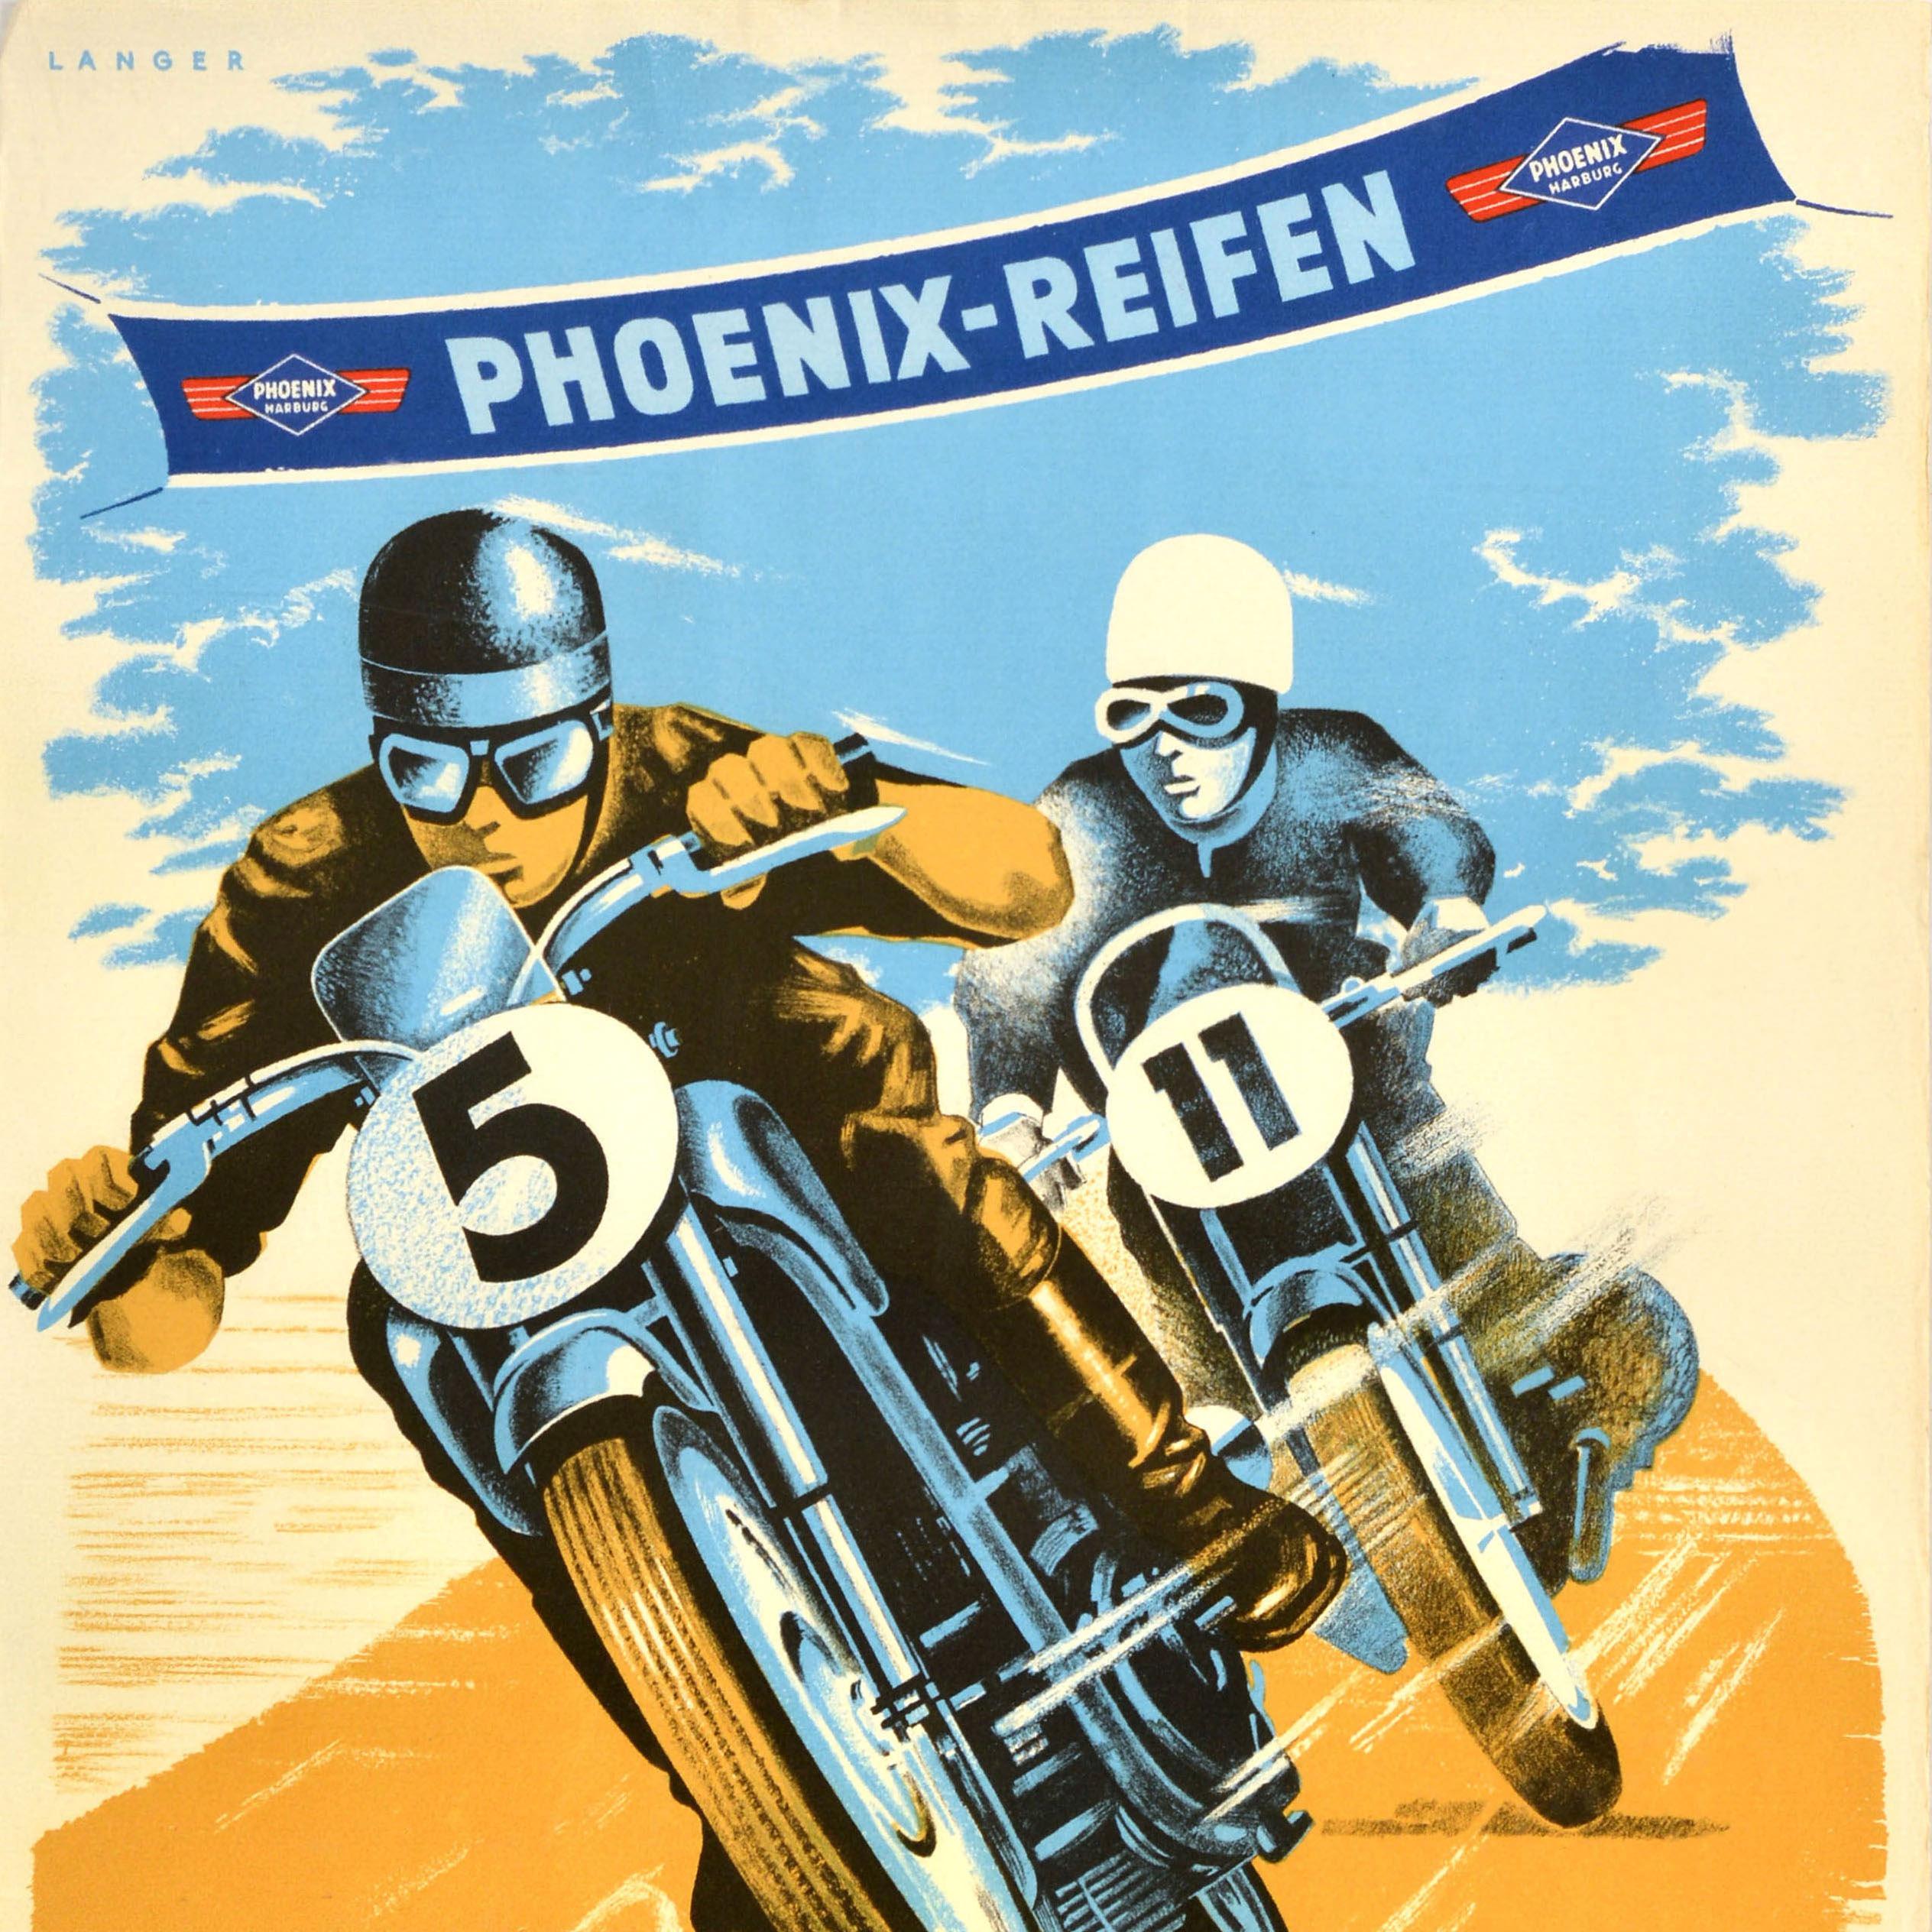 German Original Vintage Motorsport Poster Motorcycle Race Phoenix Reifen 1951 Kellersee For Sale